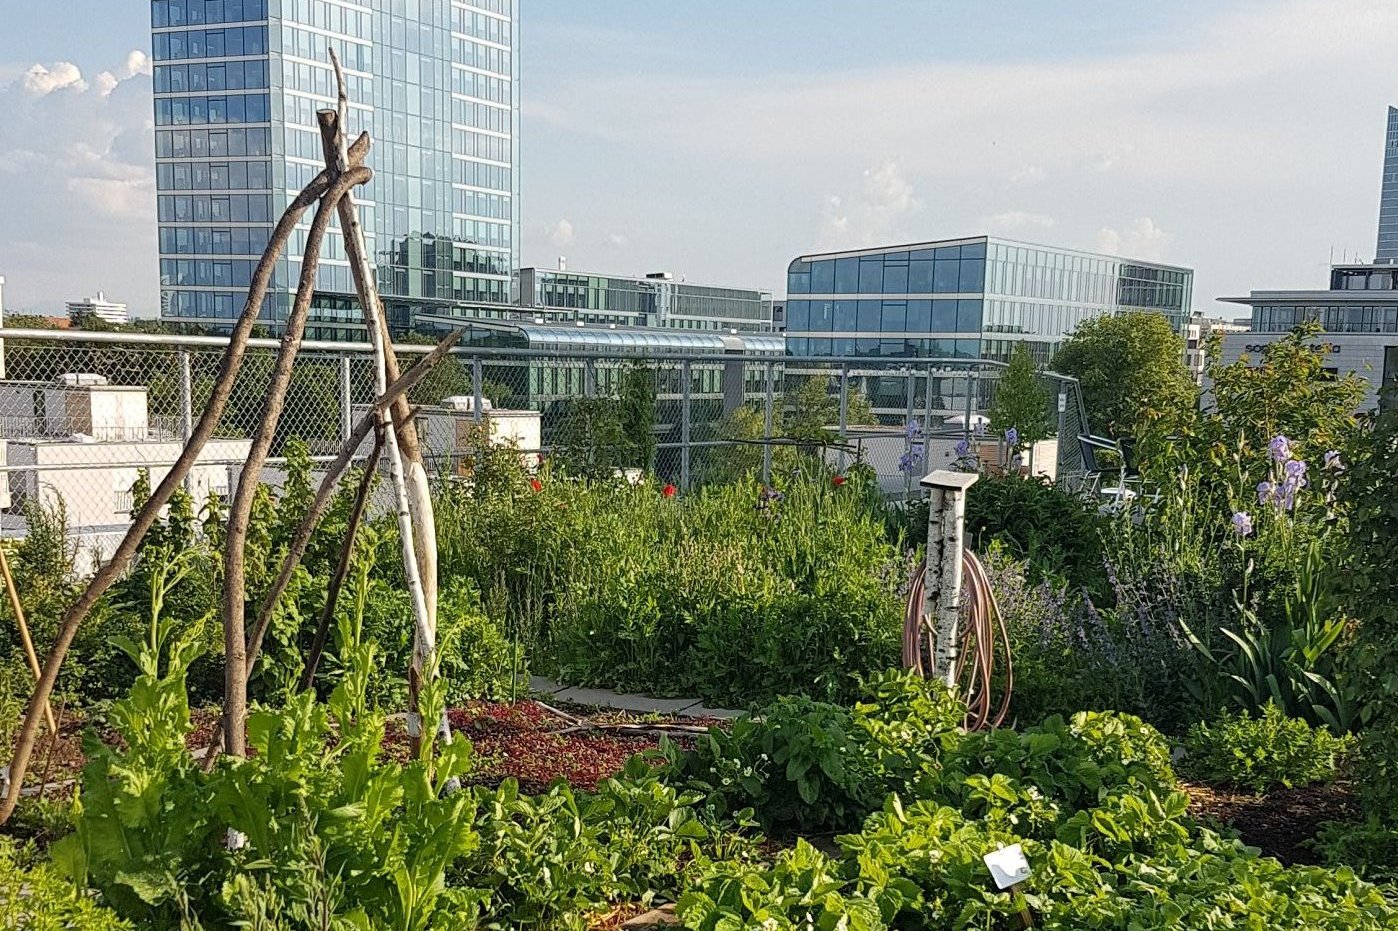 Bild: Nutzgarten der Genossenschaft Wogeno auf dem Dach, Foto: ver.de landschaftsarchitektur